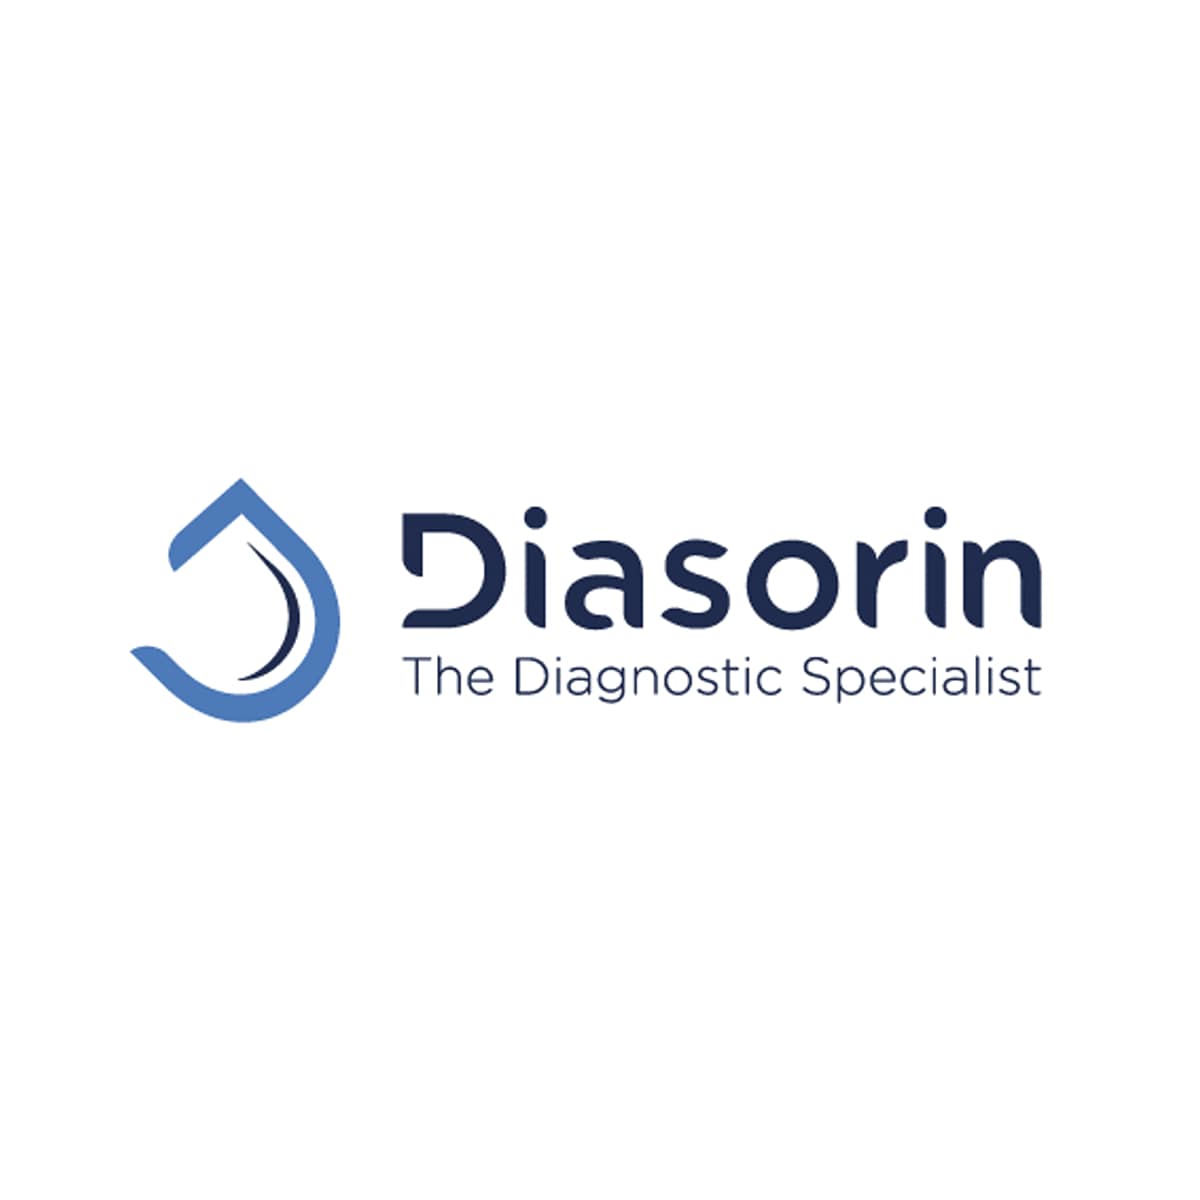 diasorin_6